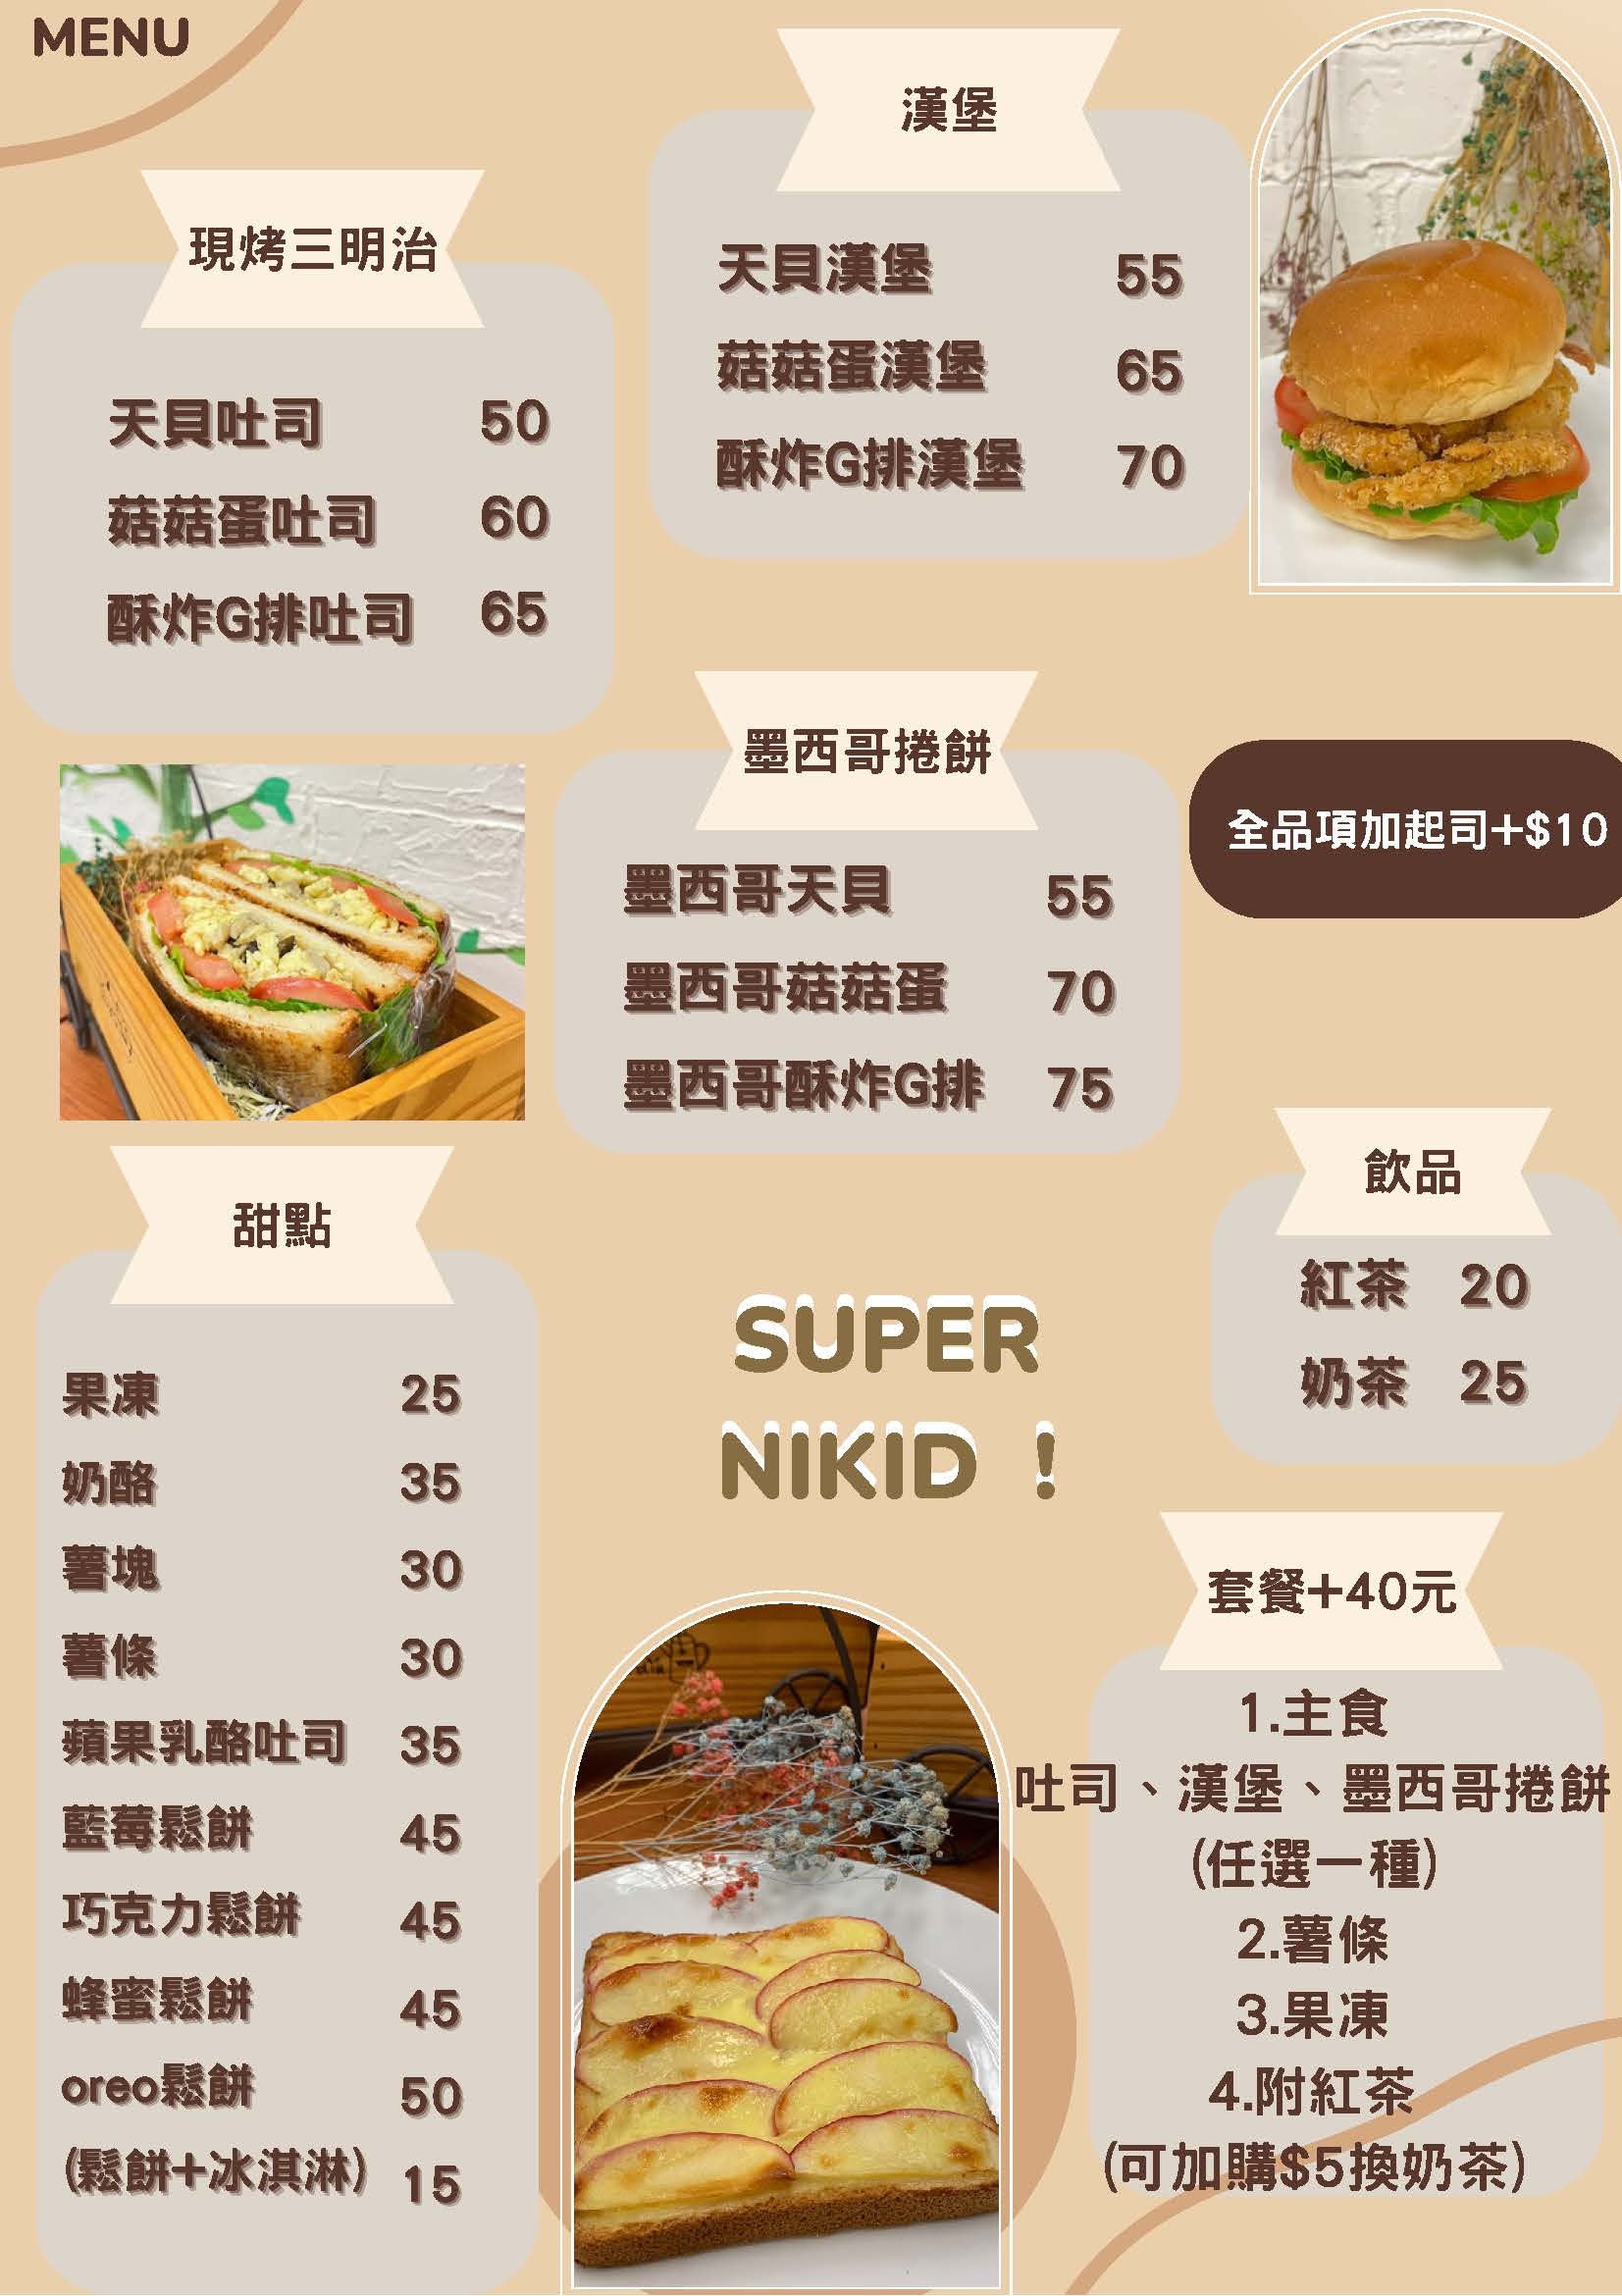 super nikid menu